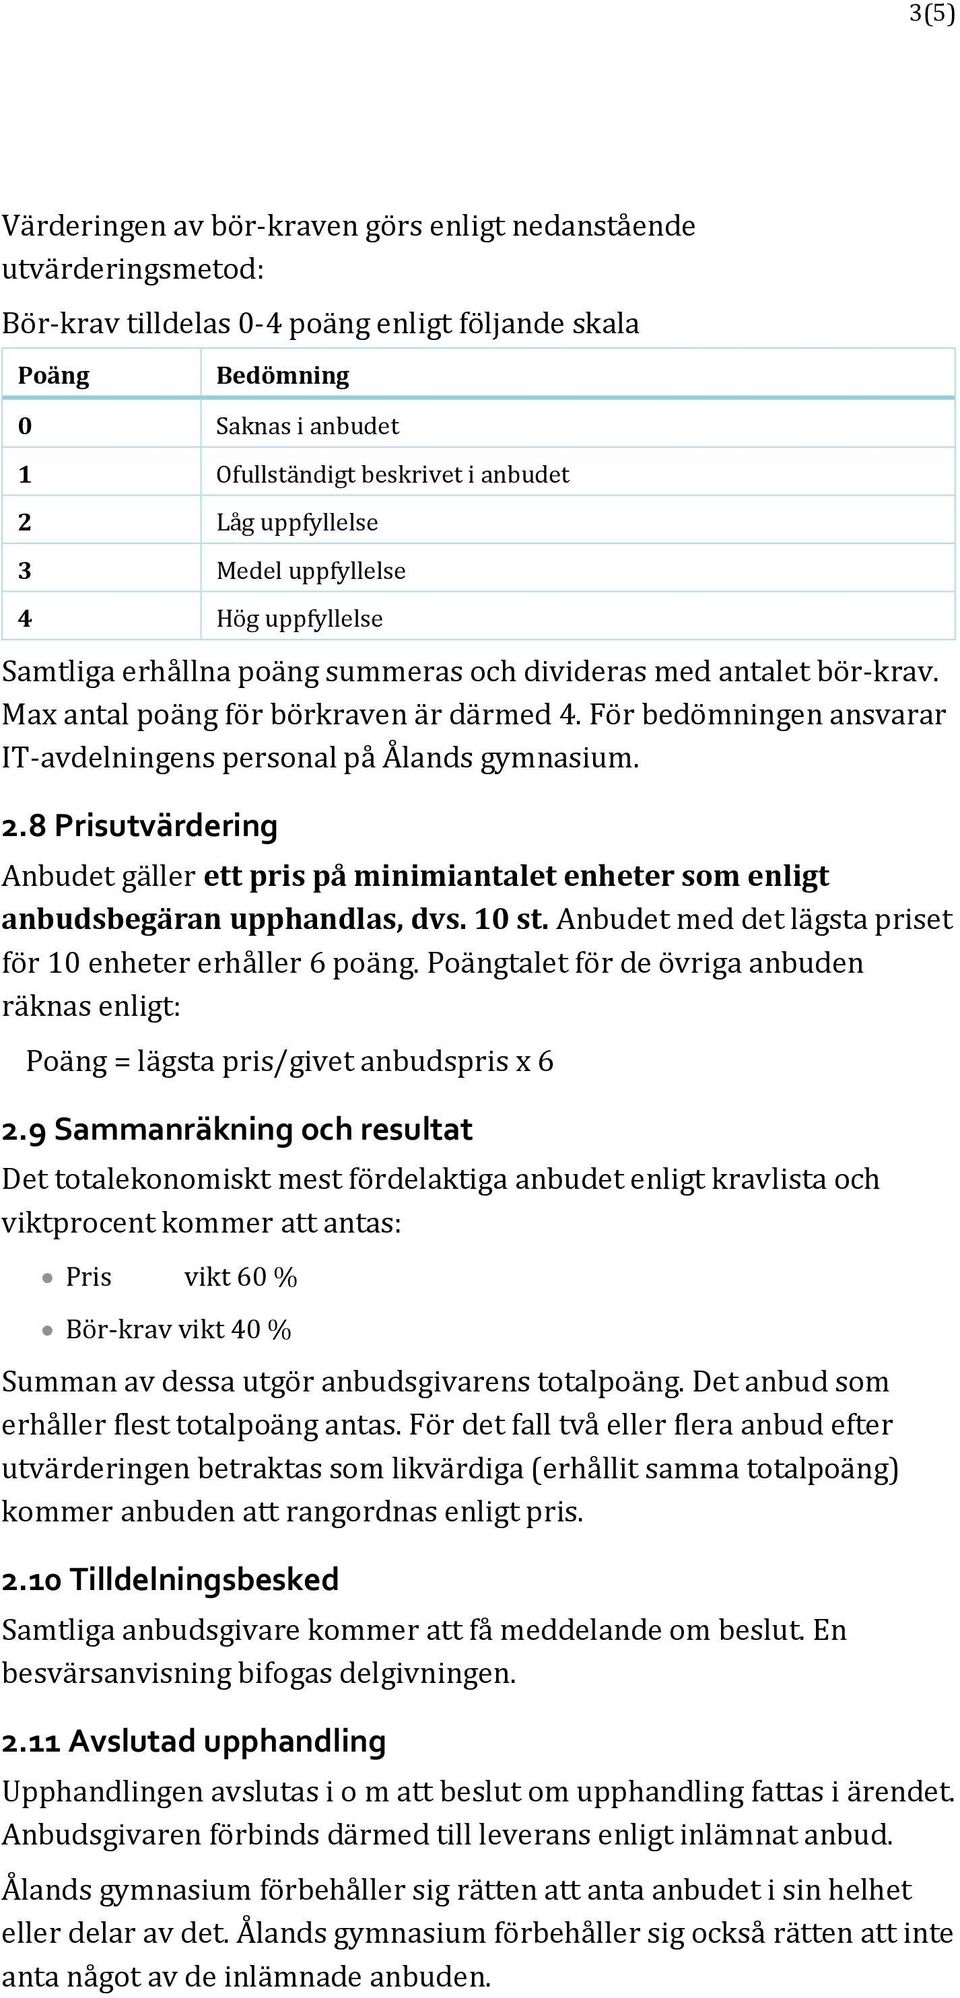 För bedömningen ansvarar IT-avdelningens personal på Ålands gymnasium. 2.8 Prisutvärdering Anbudet gäller ett pris på minimiantalet enheter som enligt anbudsbegäran upphandlas, dvs. 10 st.